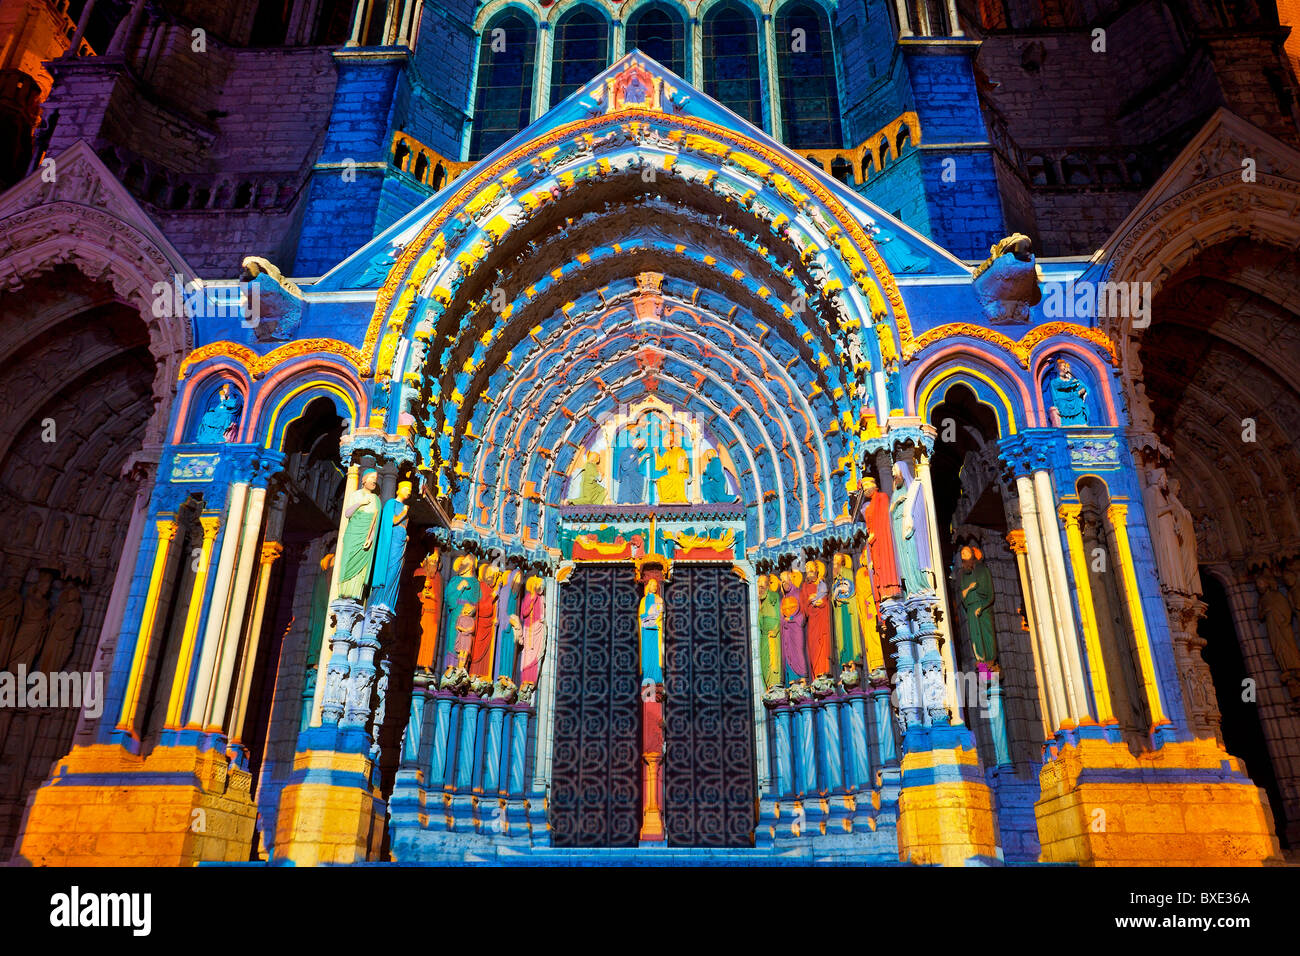 La cathédrale de Chartres est éclairée la nuit Banque D'Images